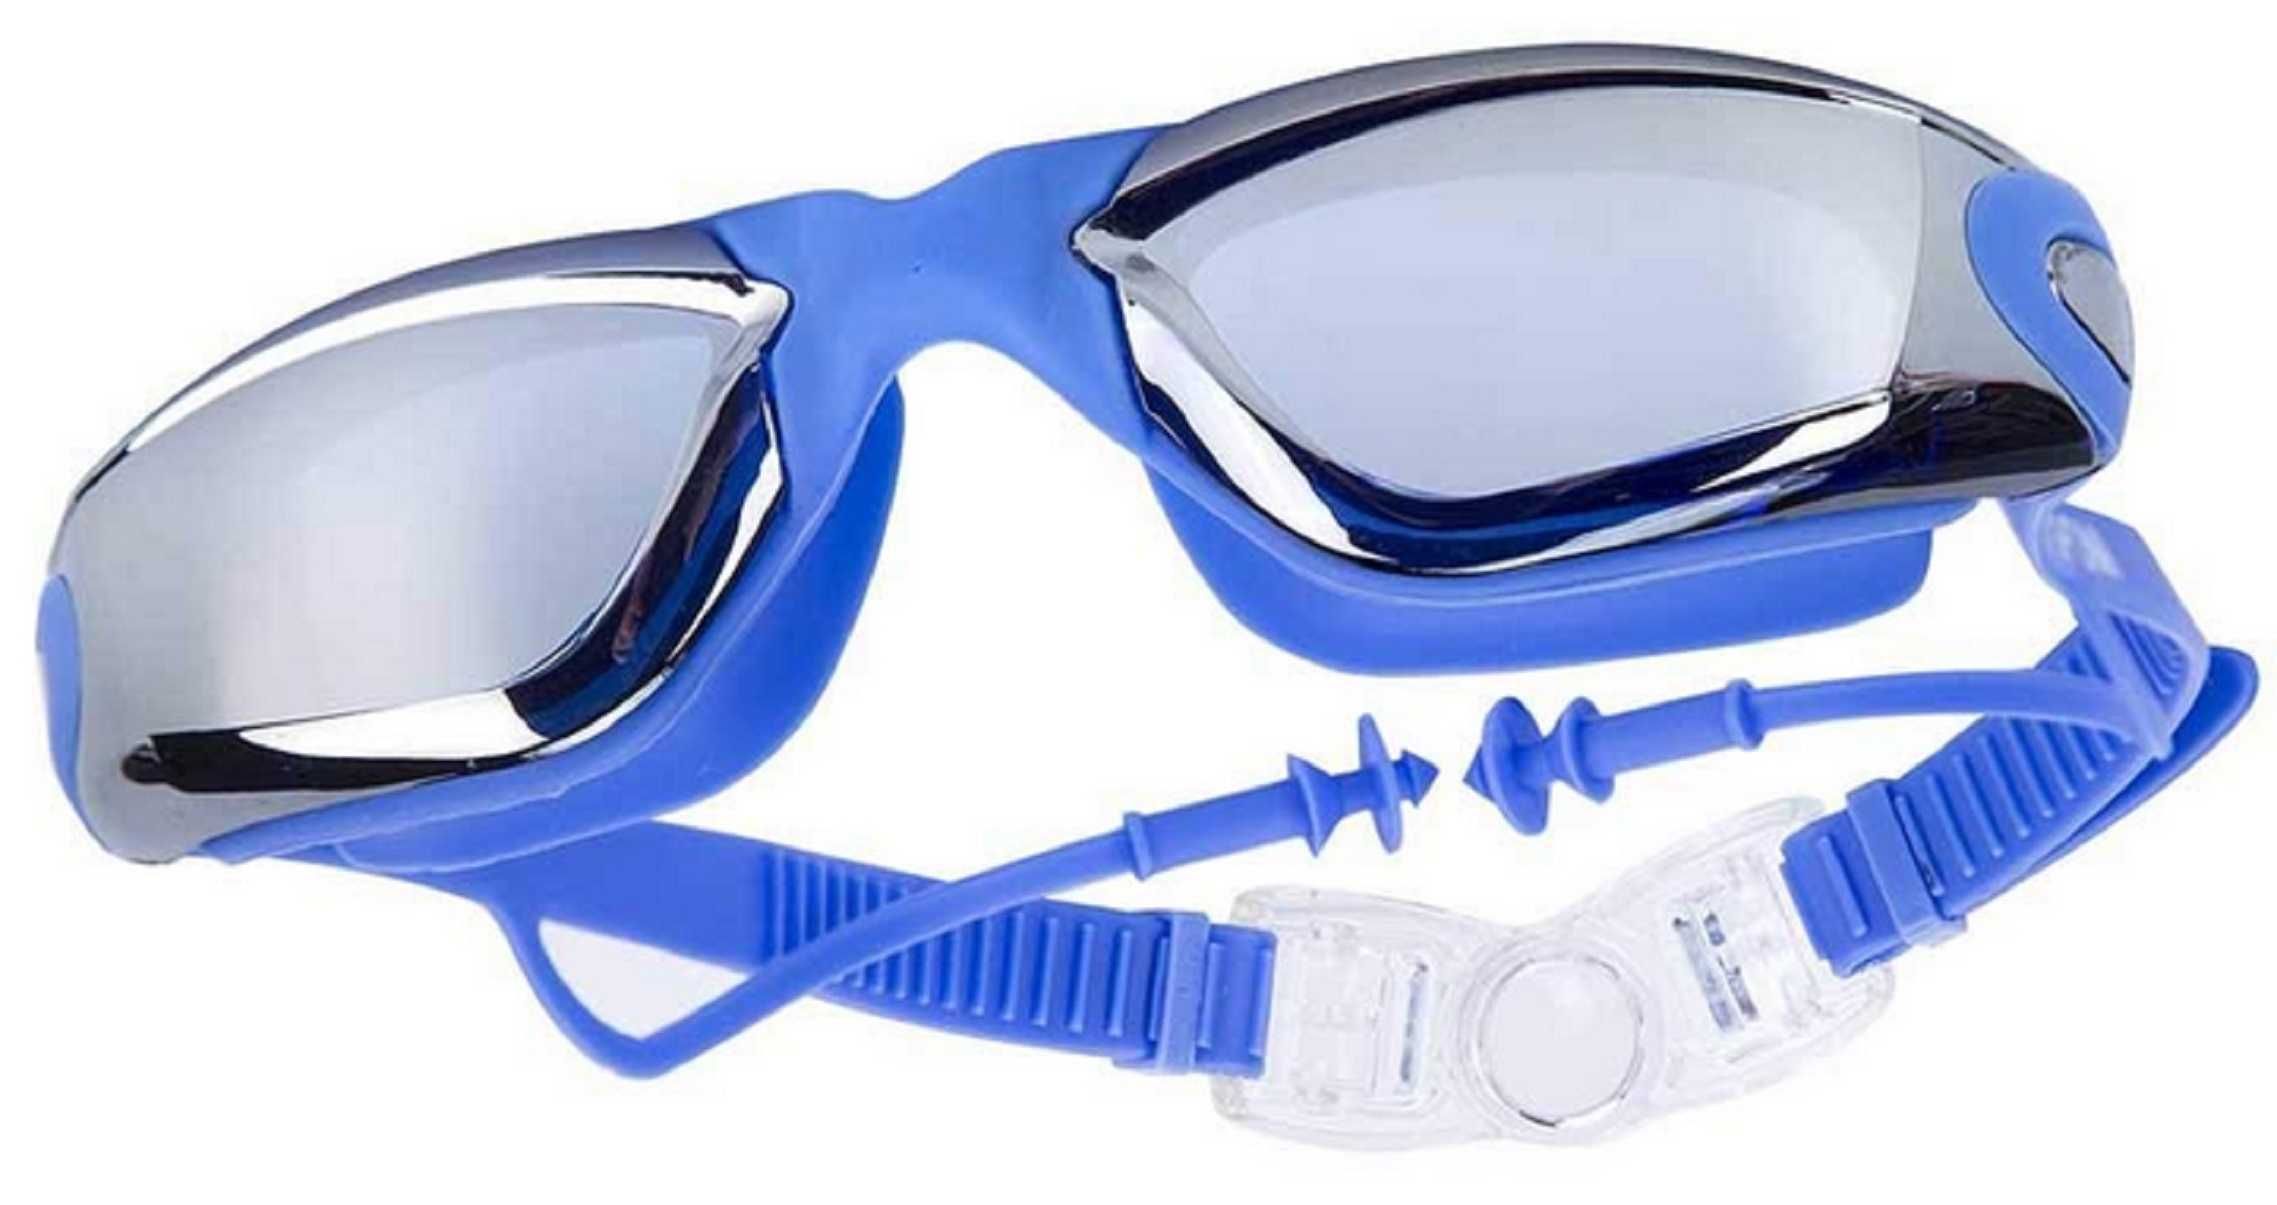 Okulary minusy- korekcyjne do pływania. Nowe, profesjonalne.